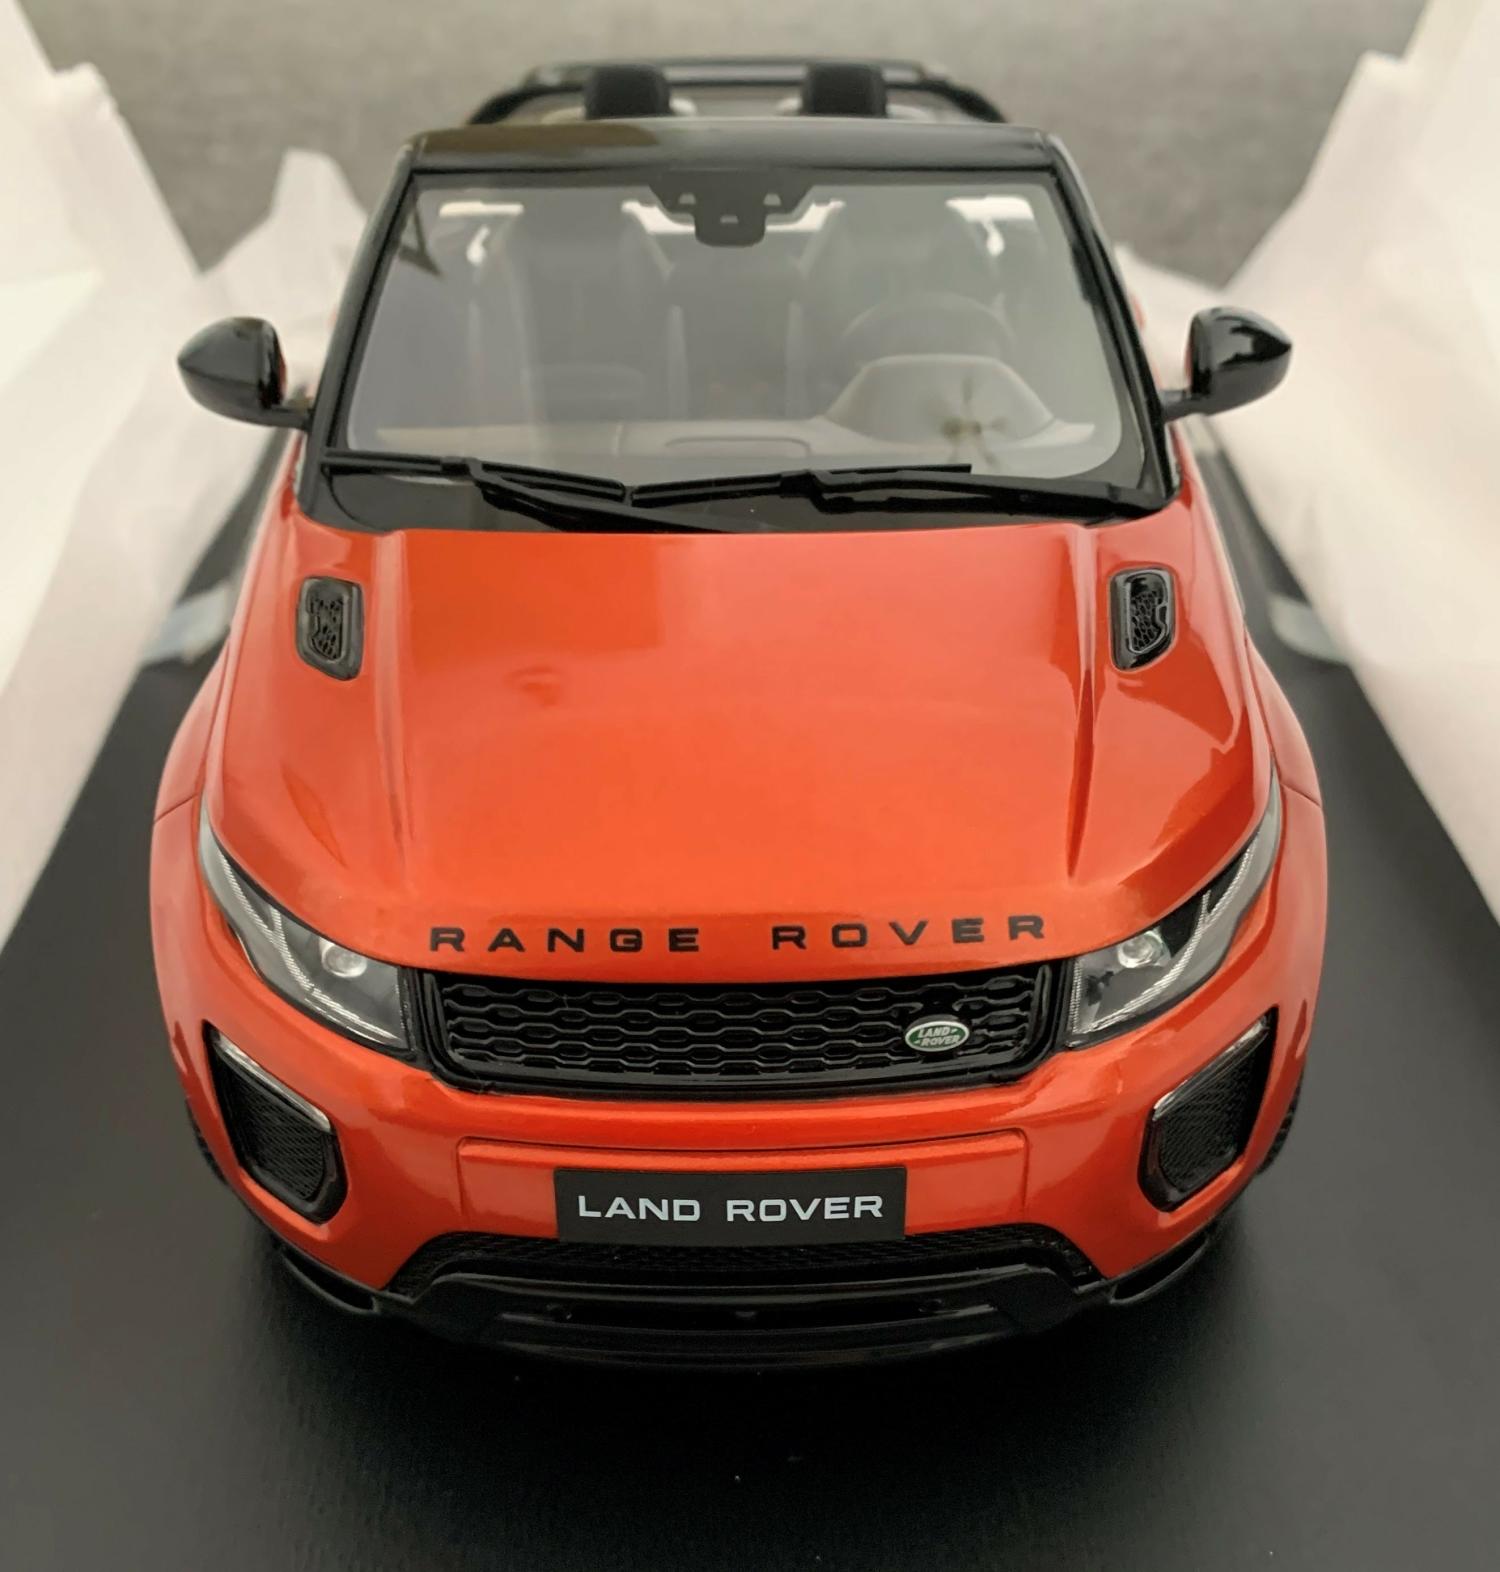 Range Rover Evoque2 dr convertible in orange (truescale) 1:18 scale